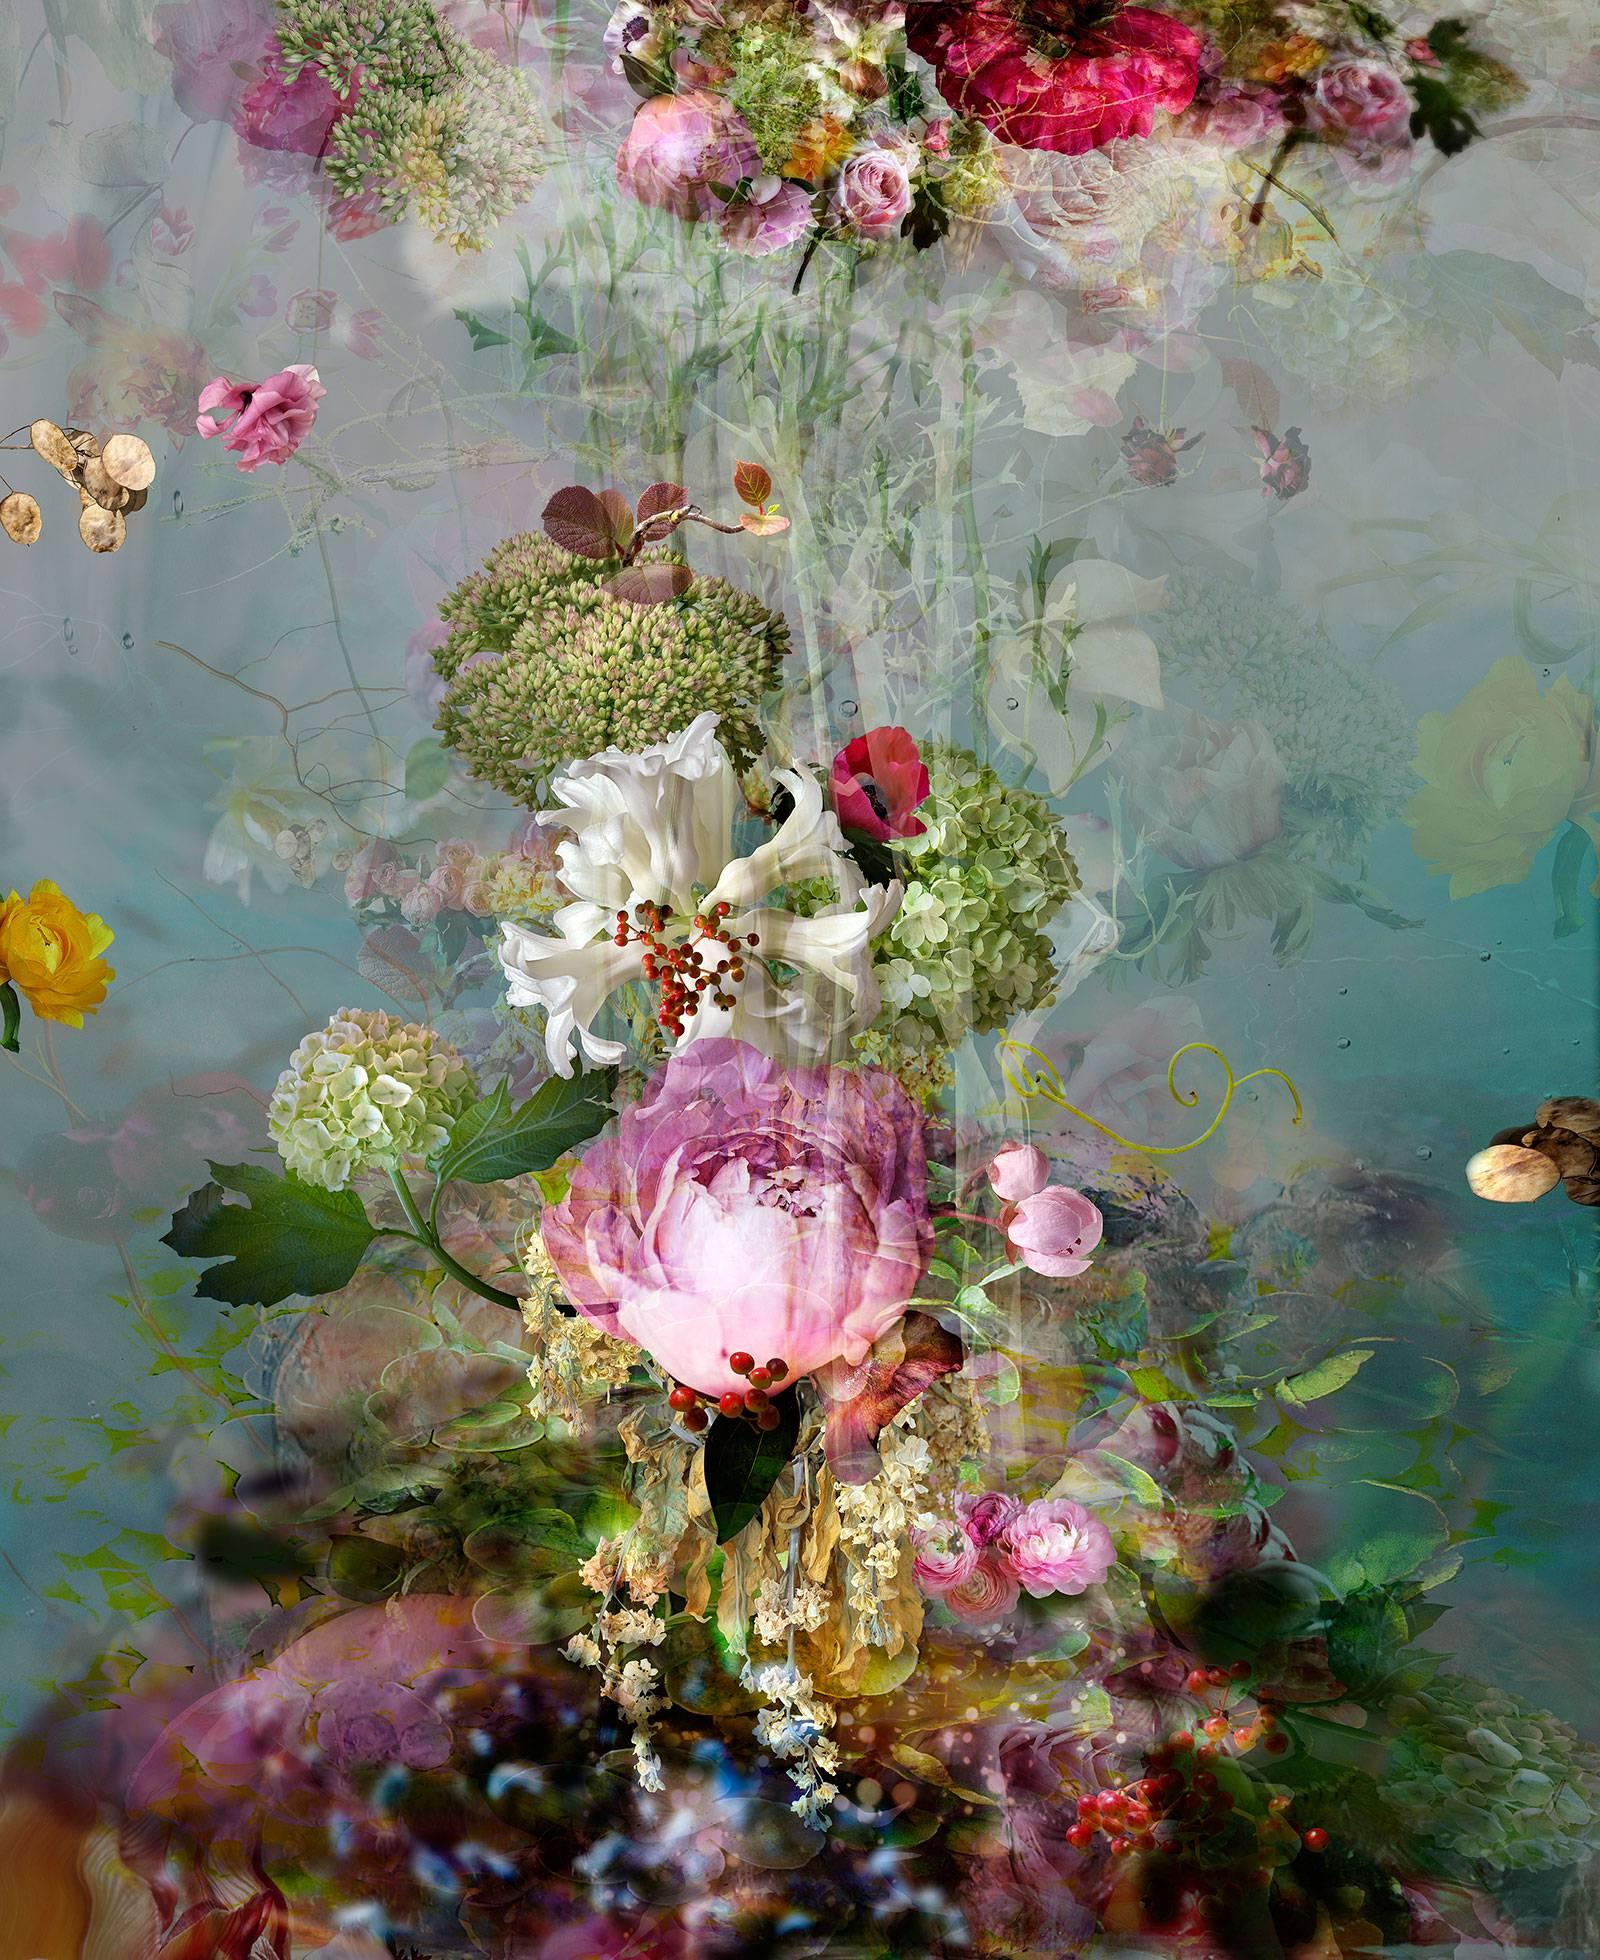 Isabelle Menin Still-Life Photograph – Sinking #3 - abstraktes Stillleben mit Blumen, zeitgenössische farbenfrohe Fotografie